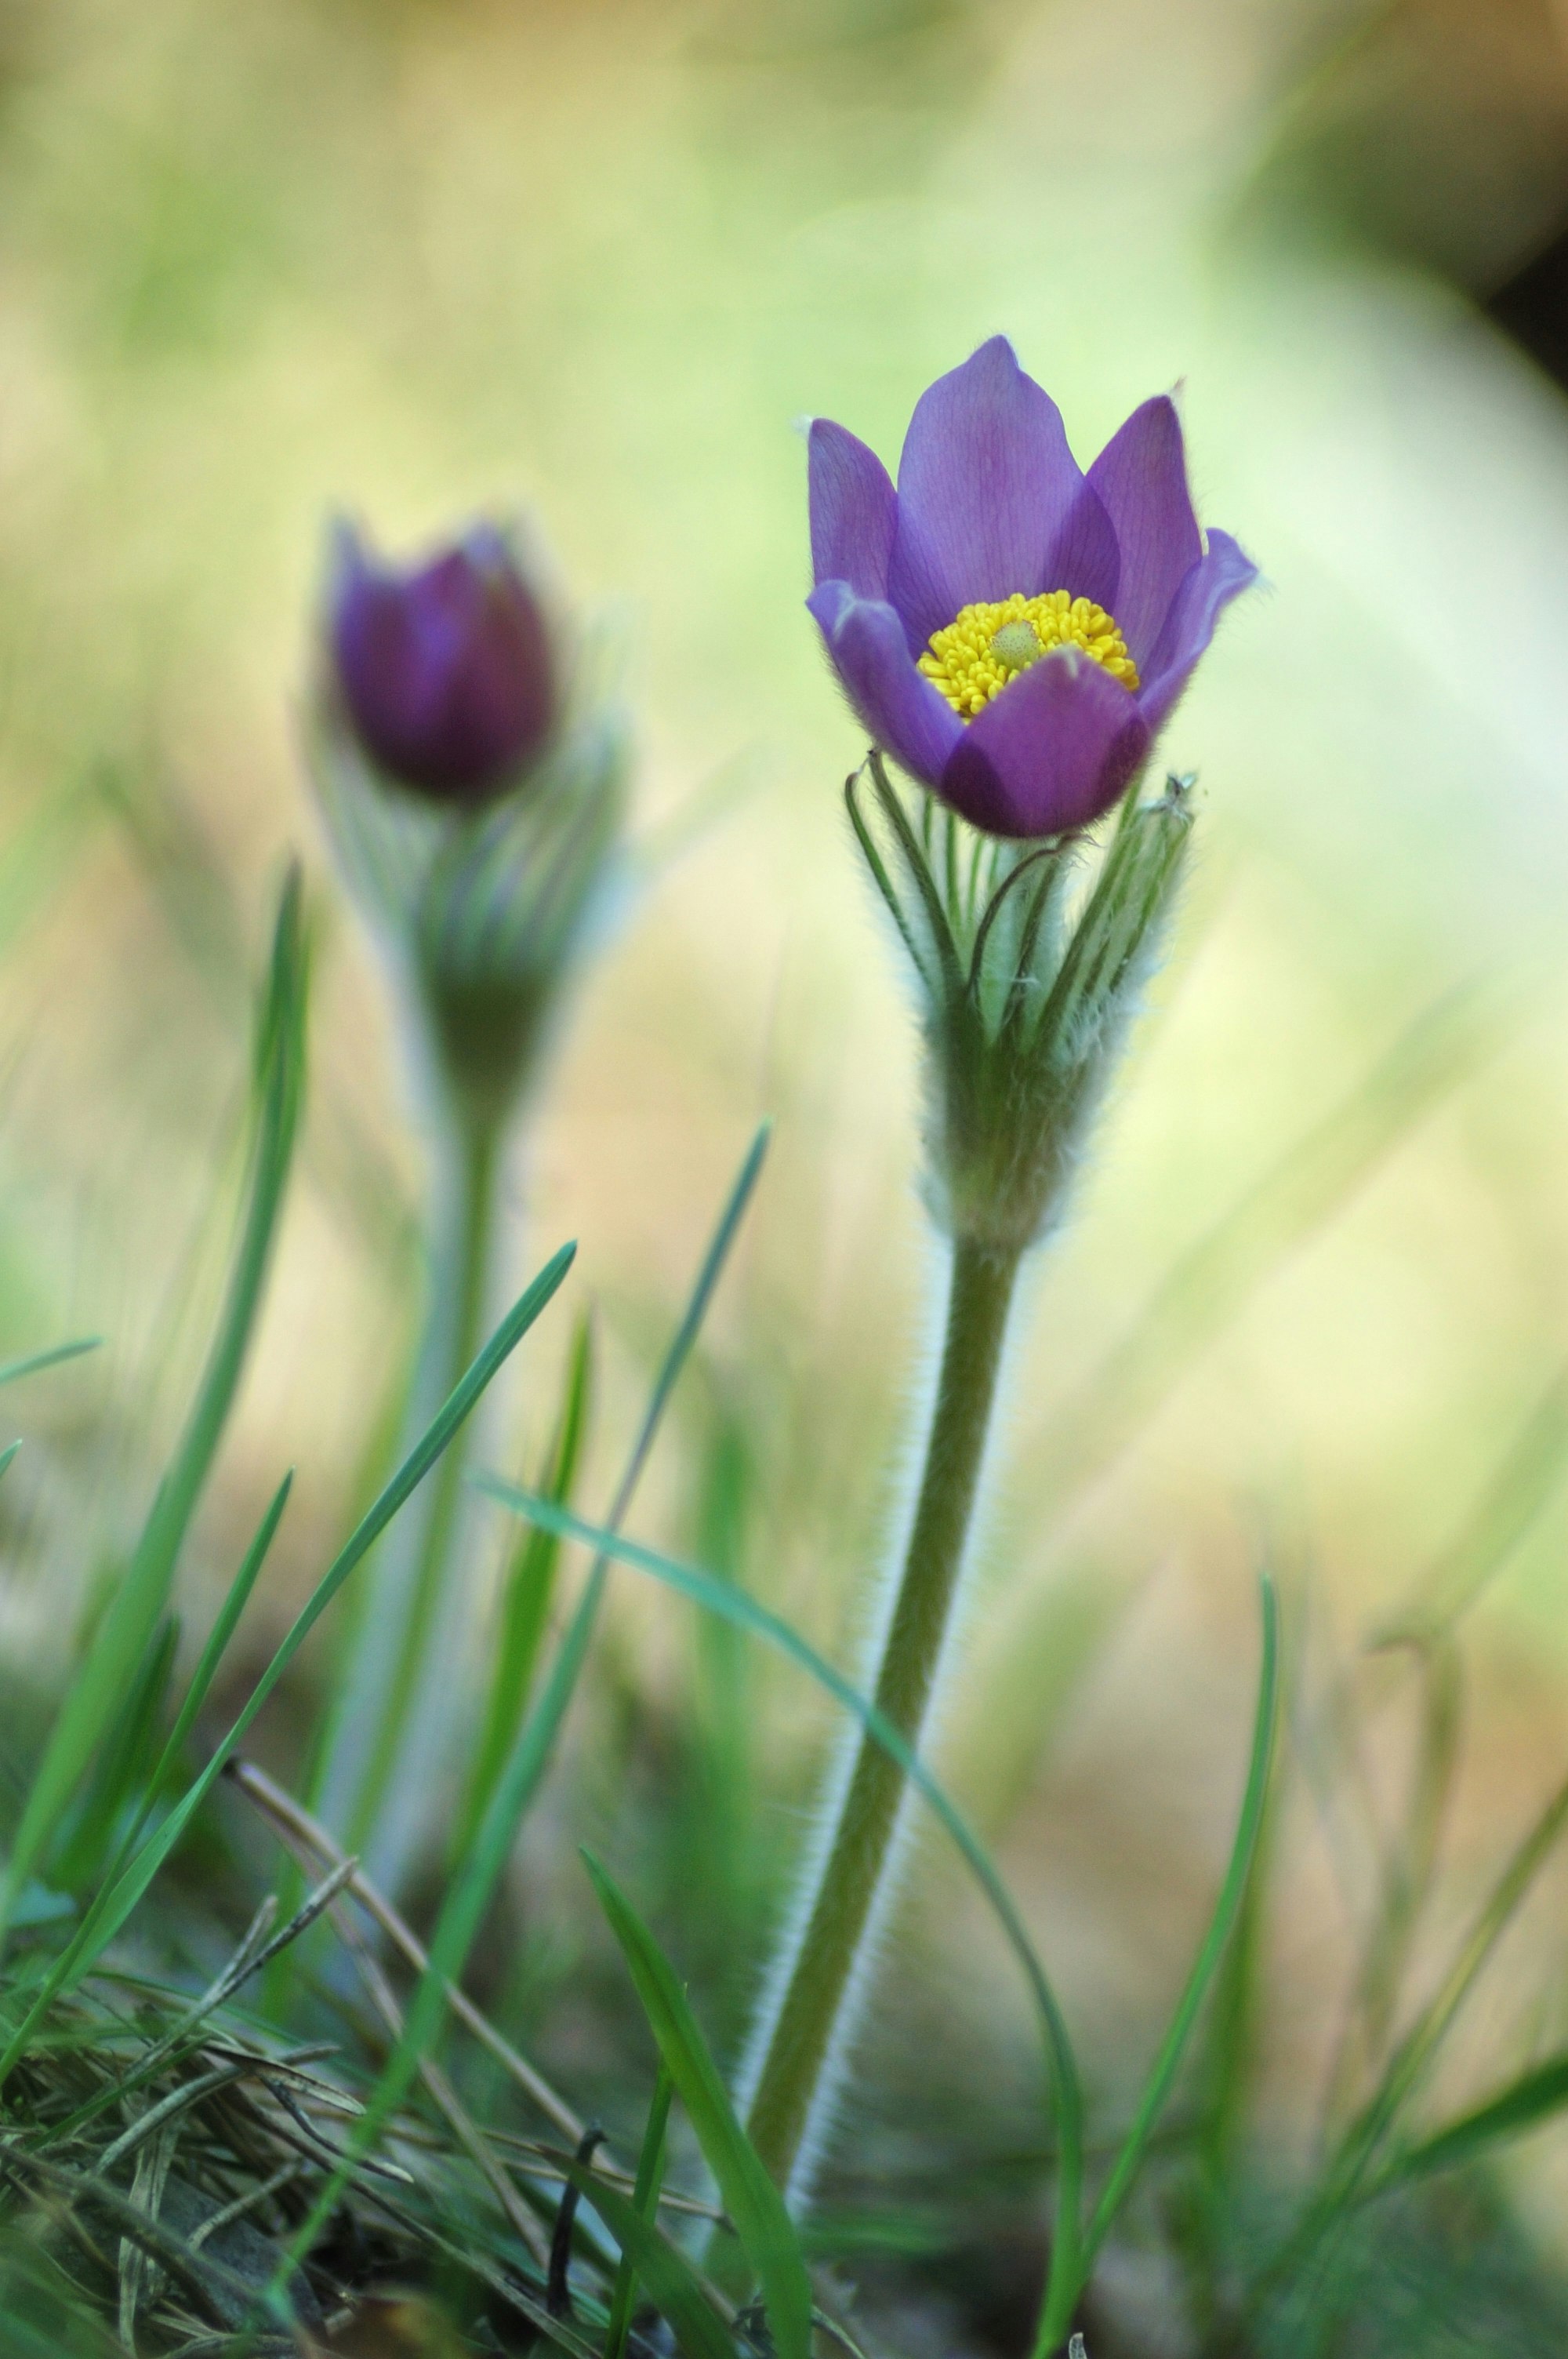 purple flower in green grass during daytime